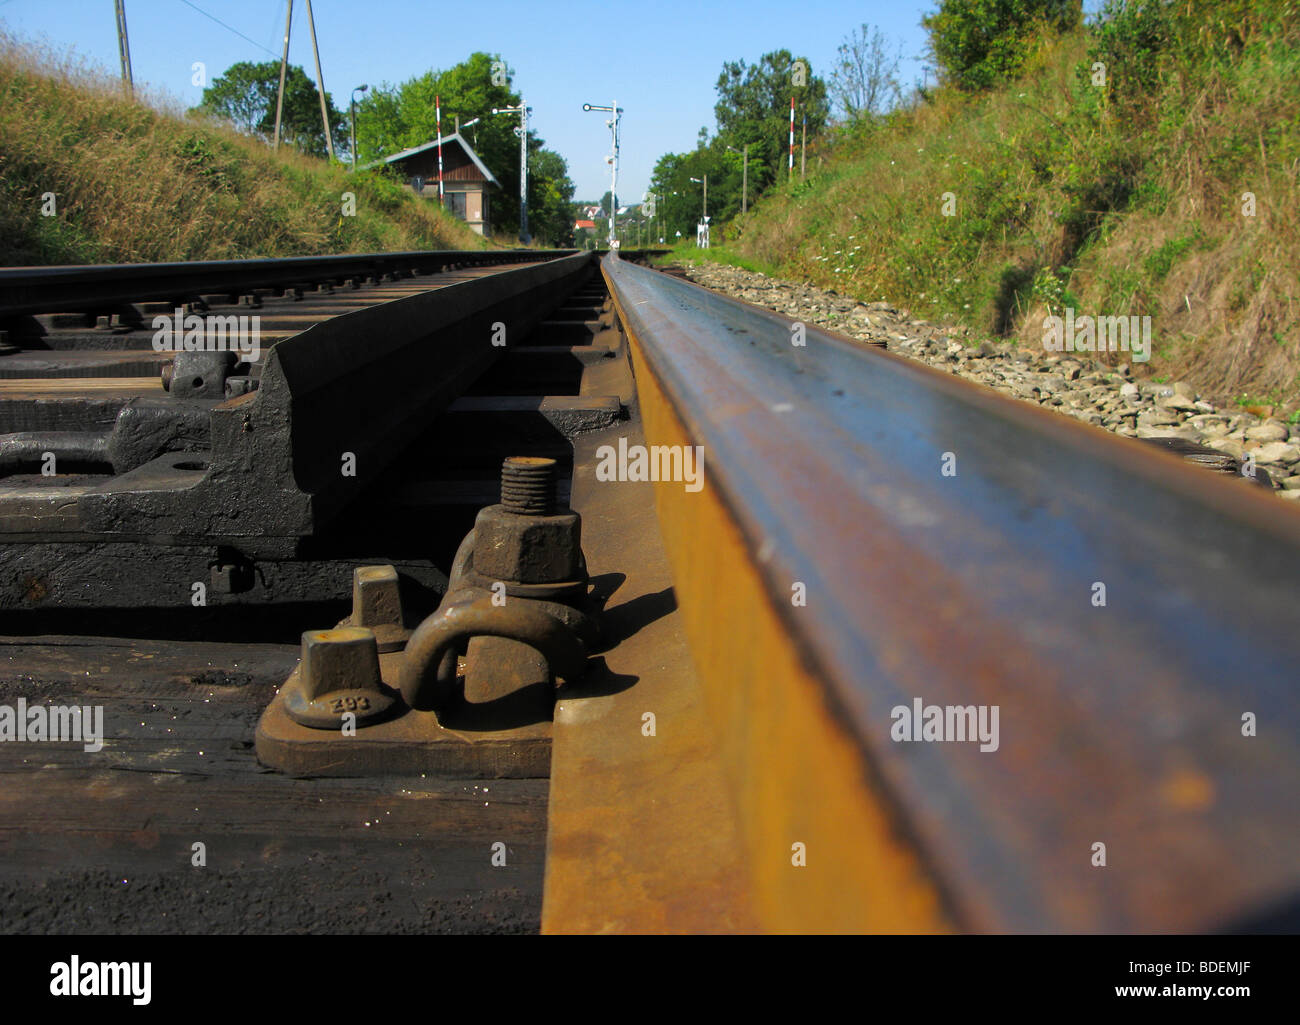 Railroad, concept Stock Photo